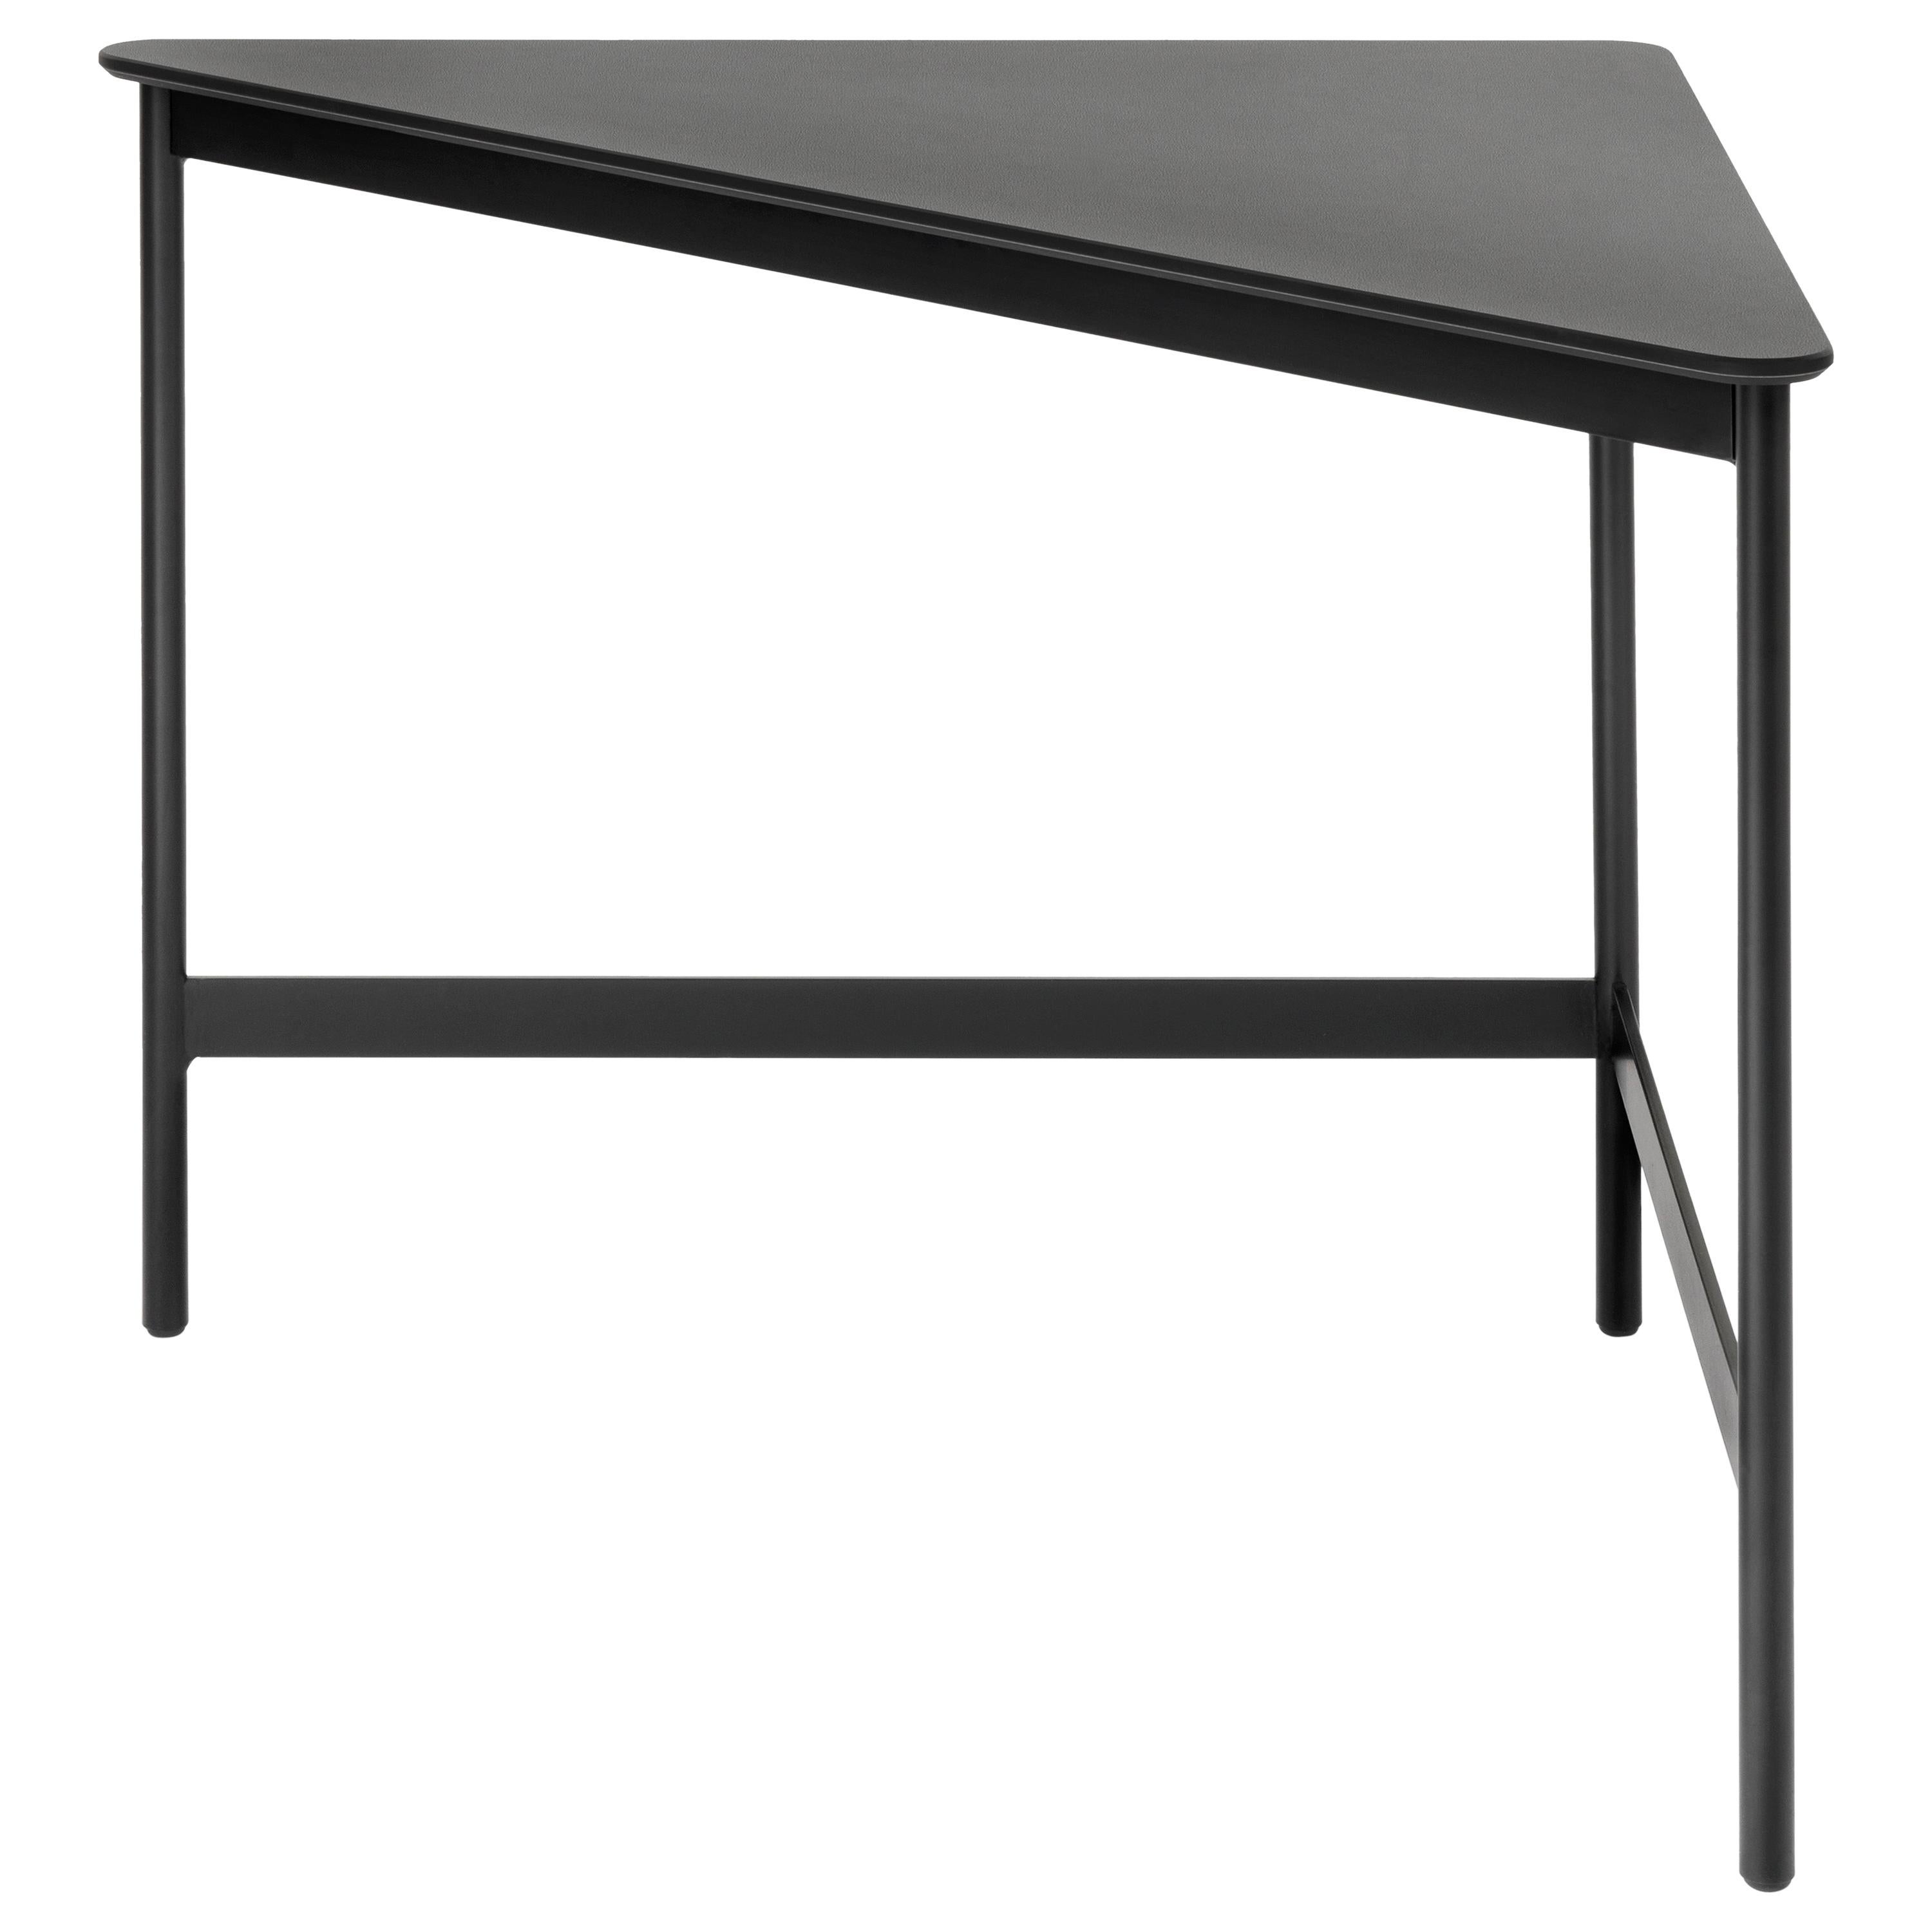 Arflex Capilano 55cm Small Table in Ceramic Tile & Black Base by Luca Nichetto For Sale